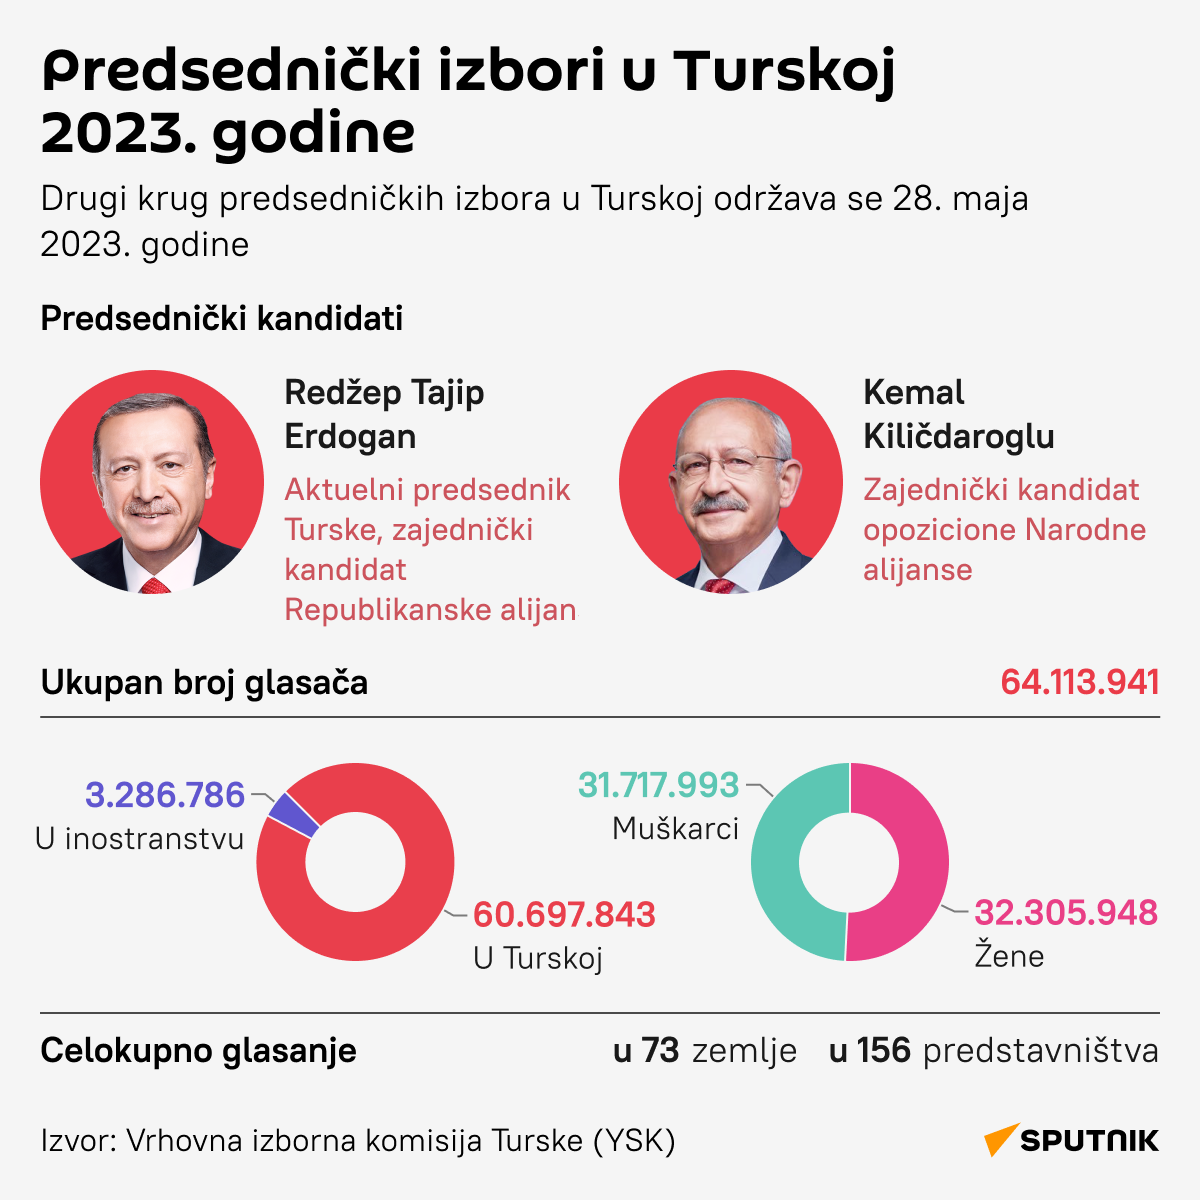 INFOGRAFIKA Drugi krug predsedničkih izbora u Turskoj - Sputnik Srbija